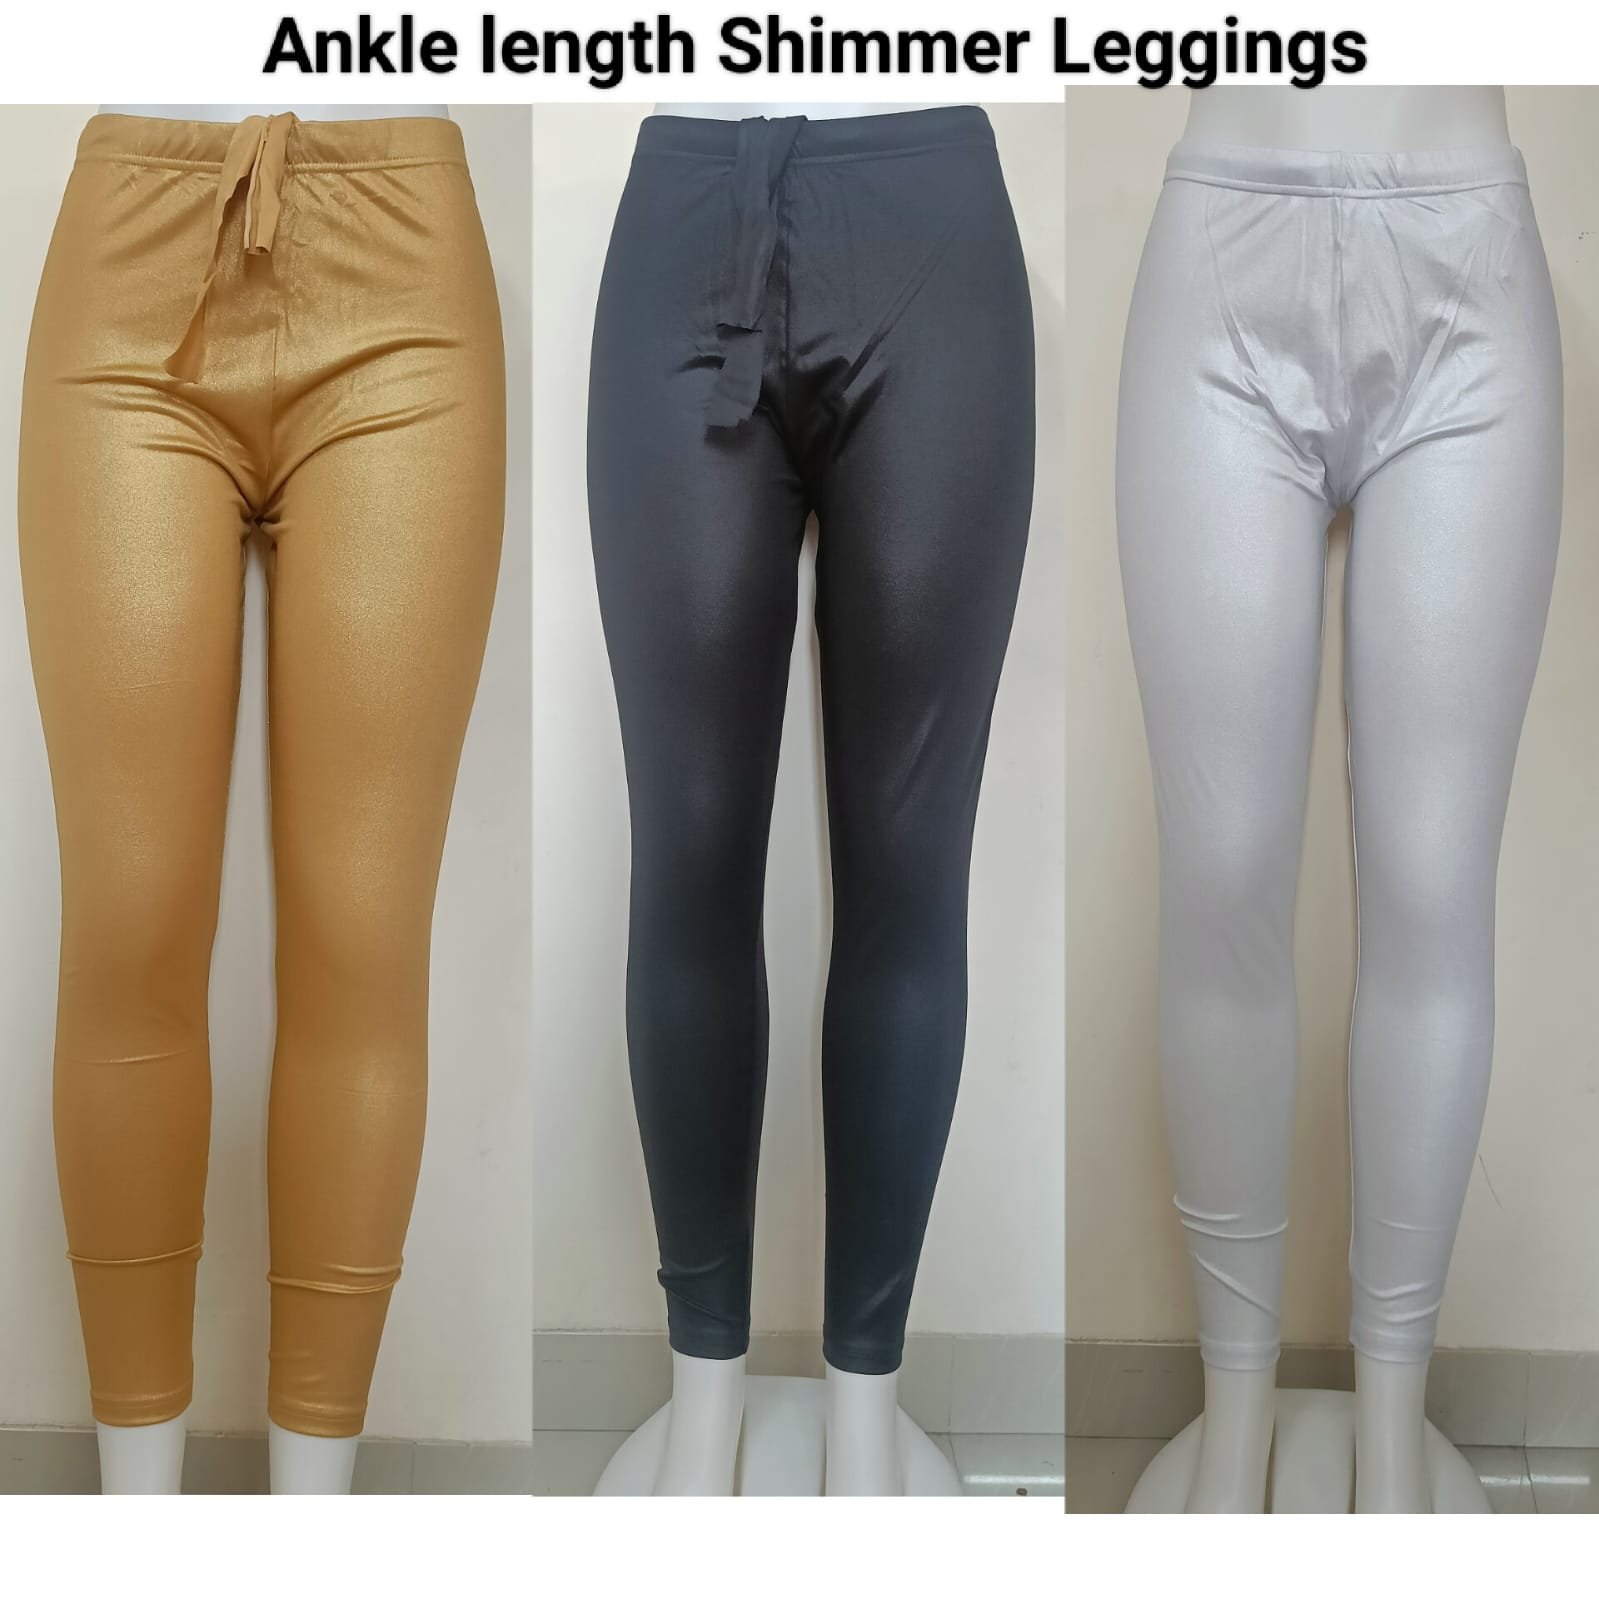  Shimmer Leggings